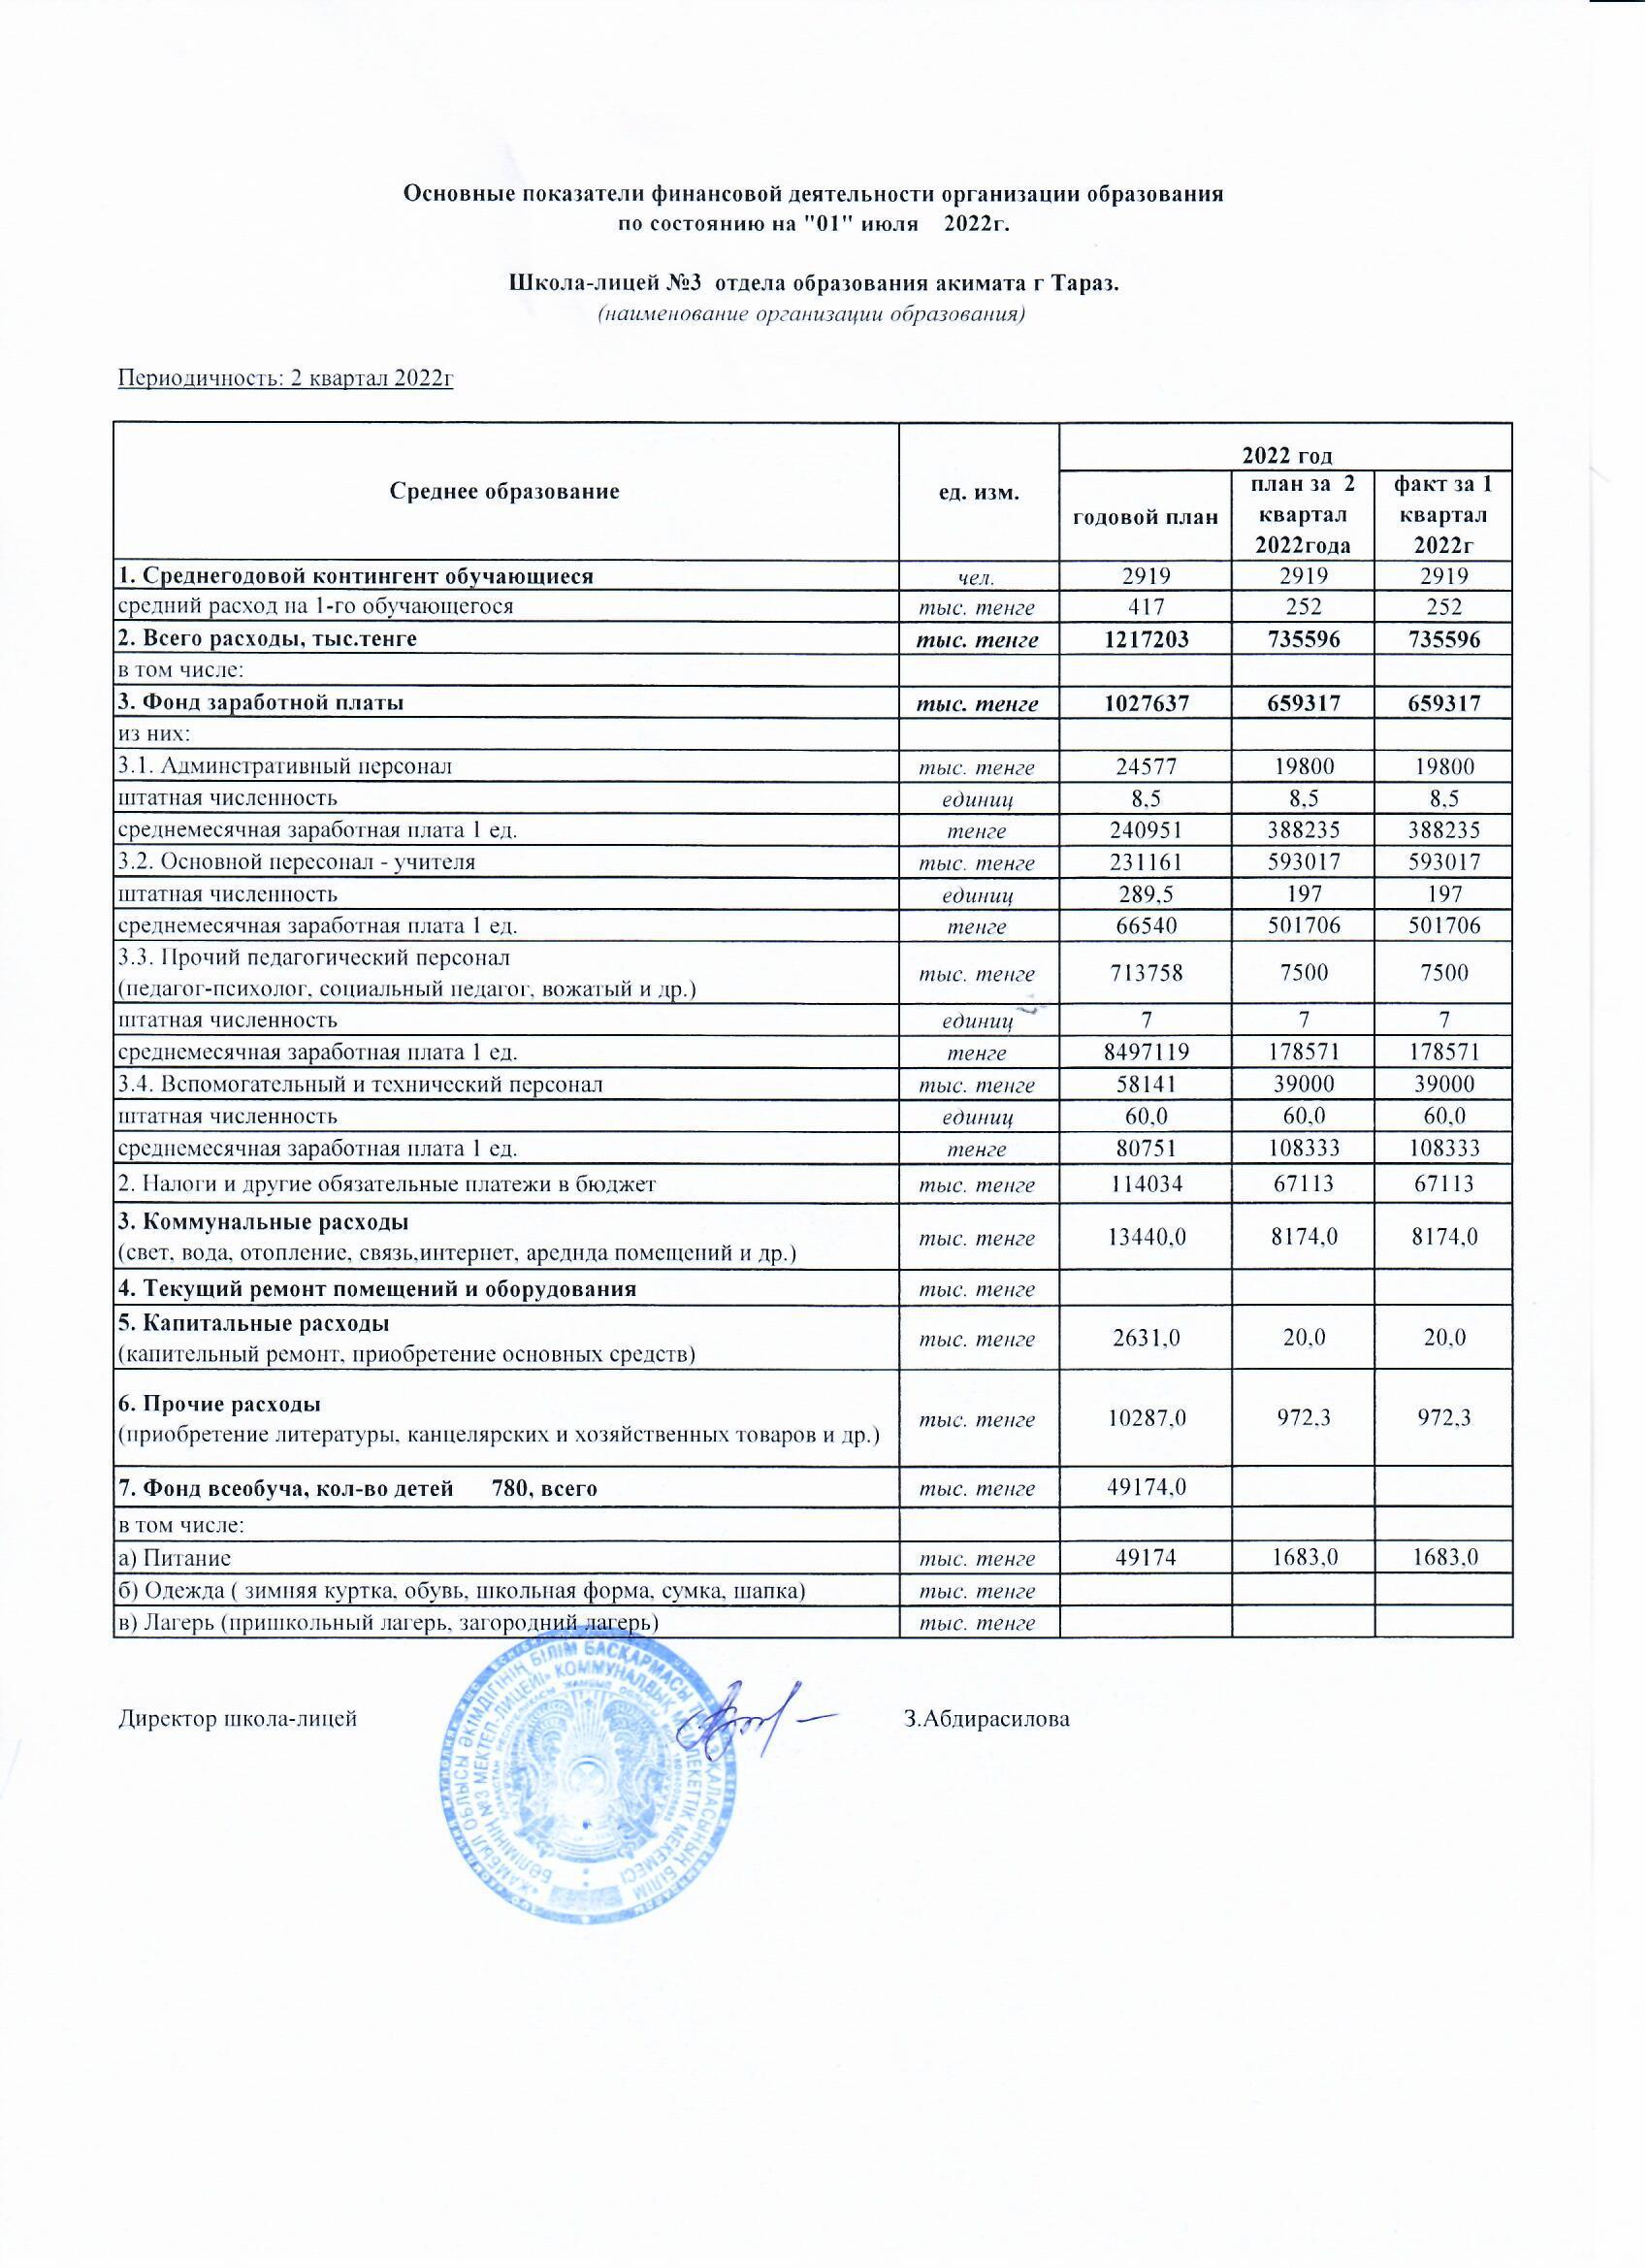 Основные показатели финансовой деятельности 01.07.2022